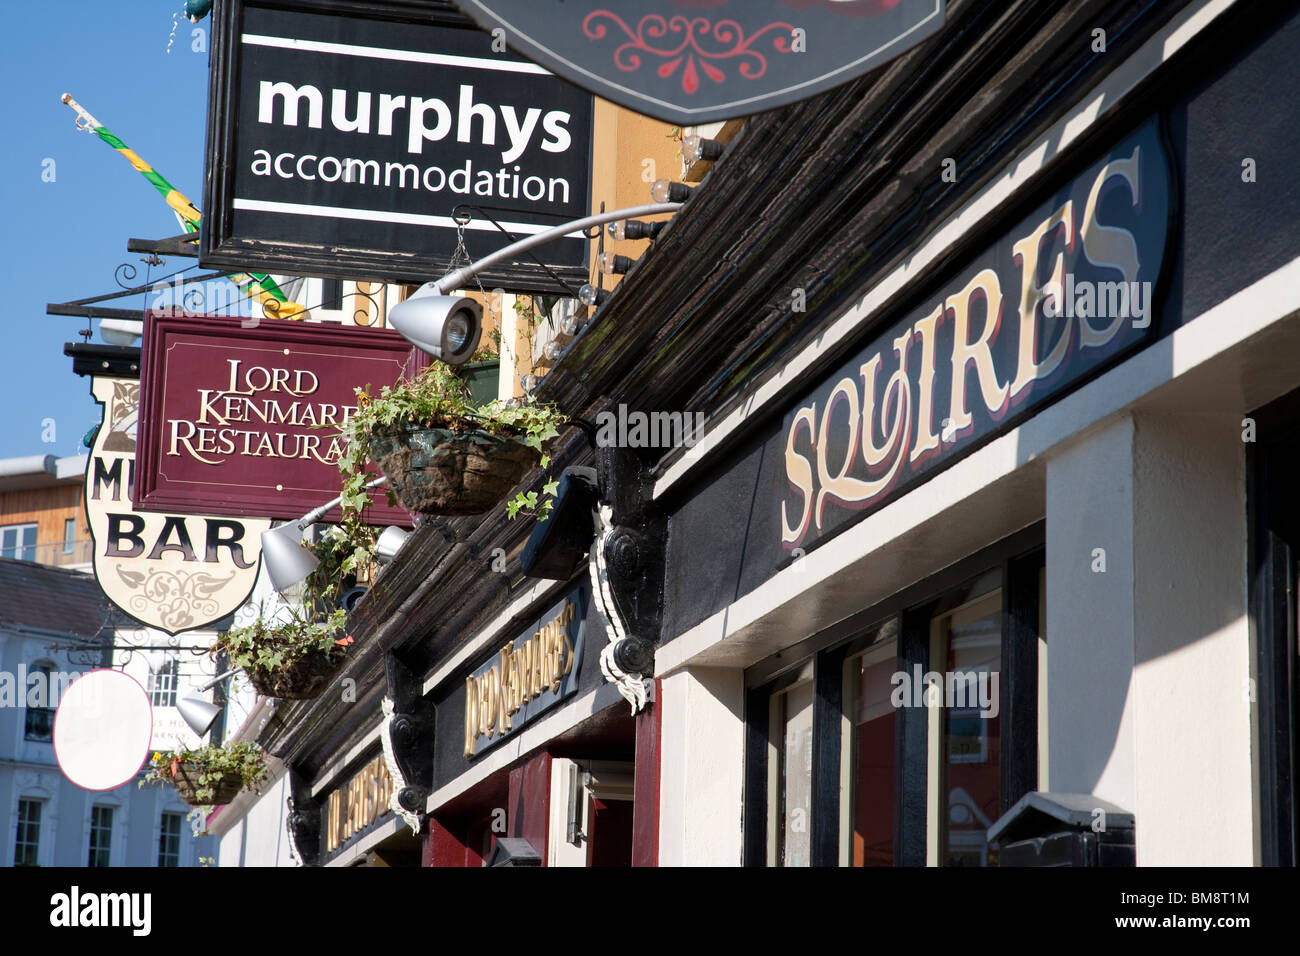 Pub irlandais et restaurant signes, Killarney, comté de Kerry Banque D'Images